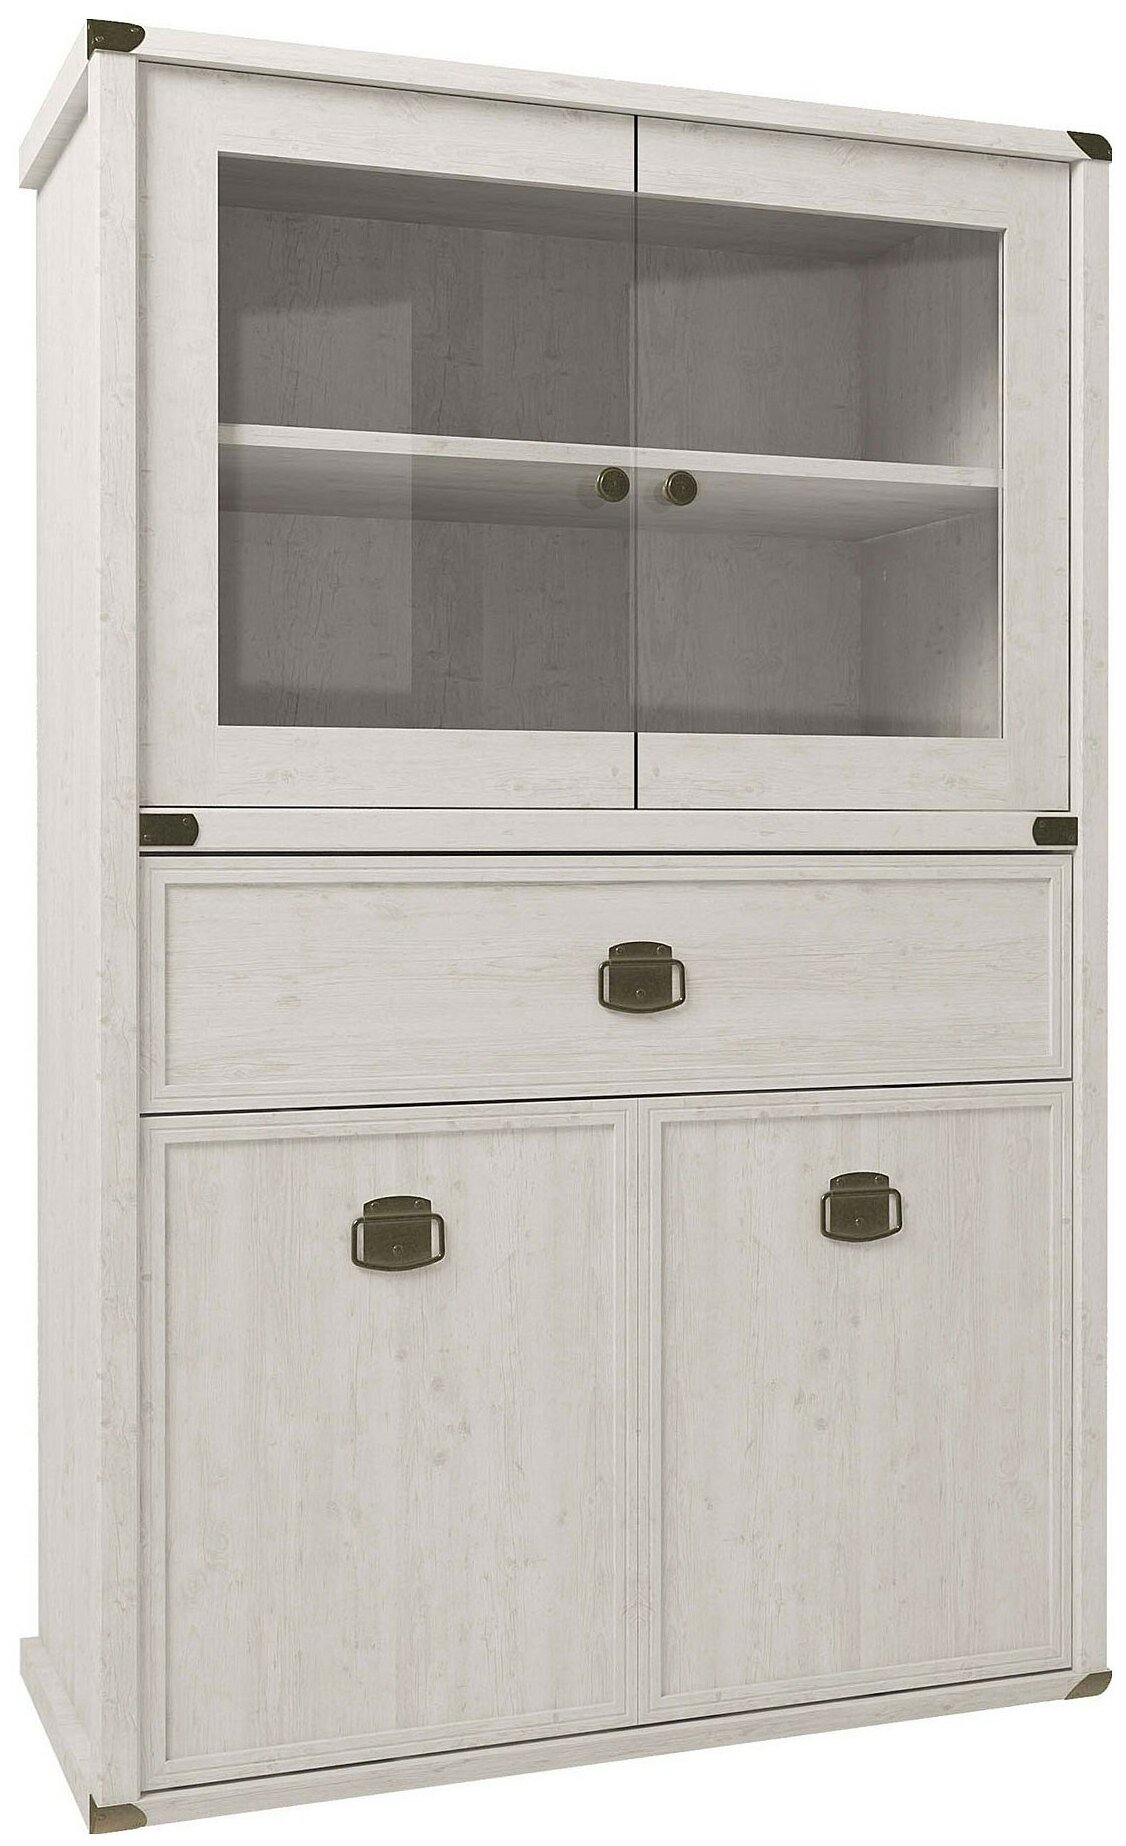 MAGELLAN (Сосна Винтаж) Anrex Шкаф с витриной 2V2D1SL, MAGELLAN, цвет Сосна винтаж